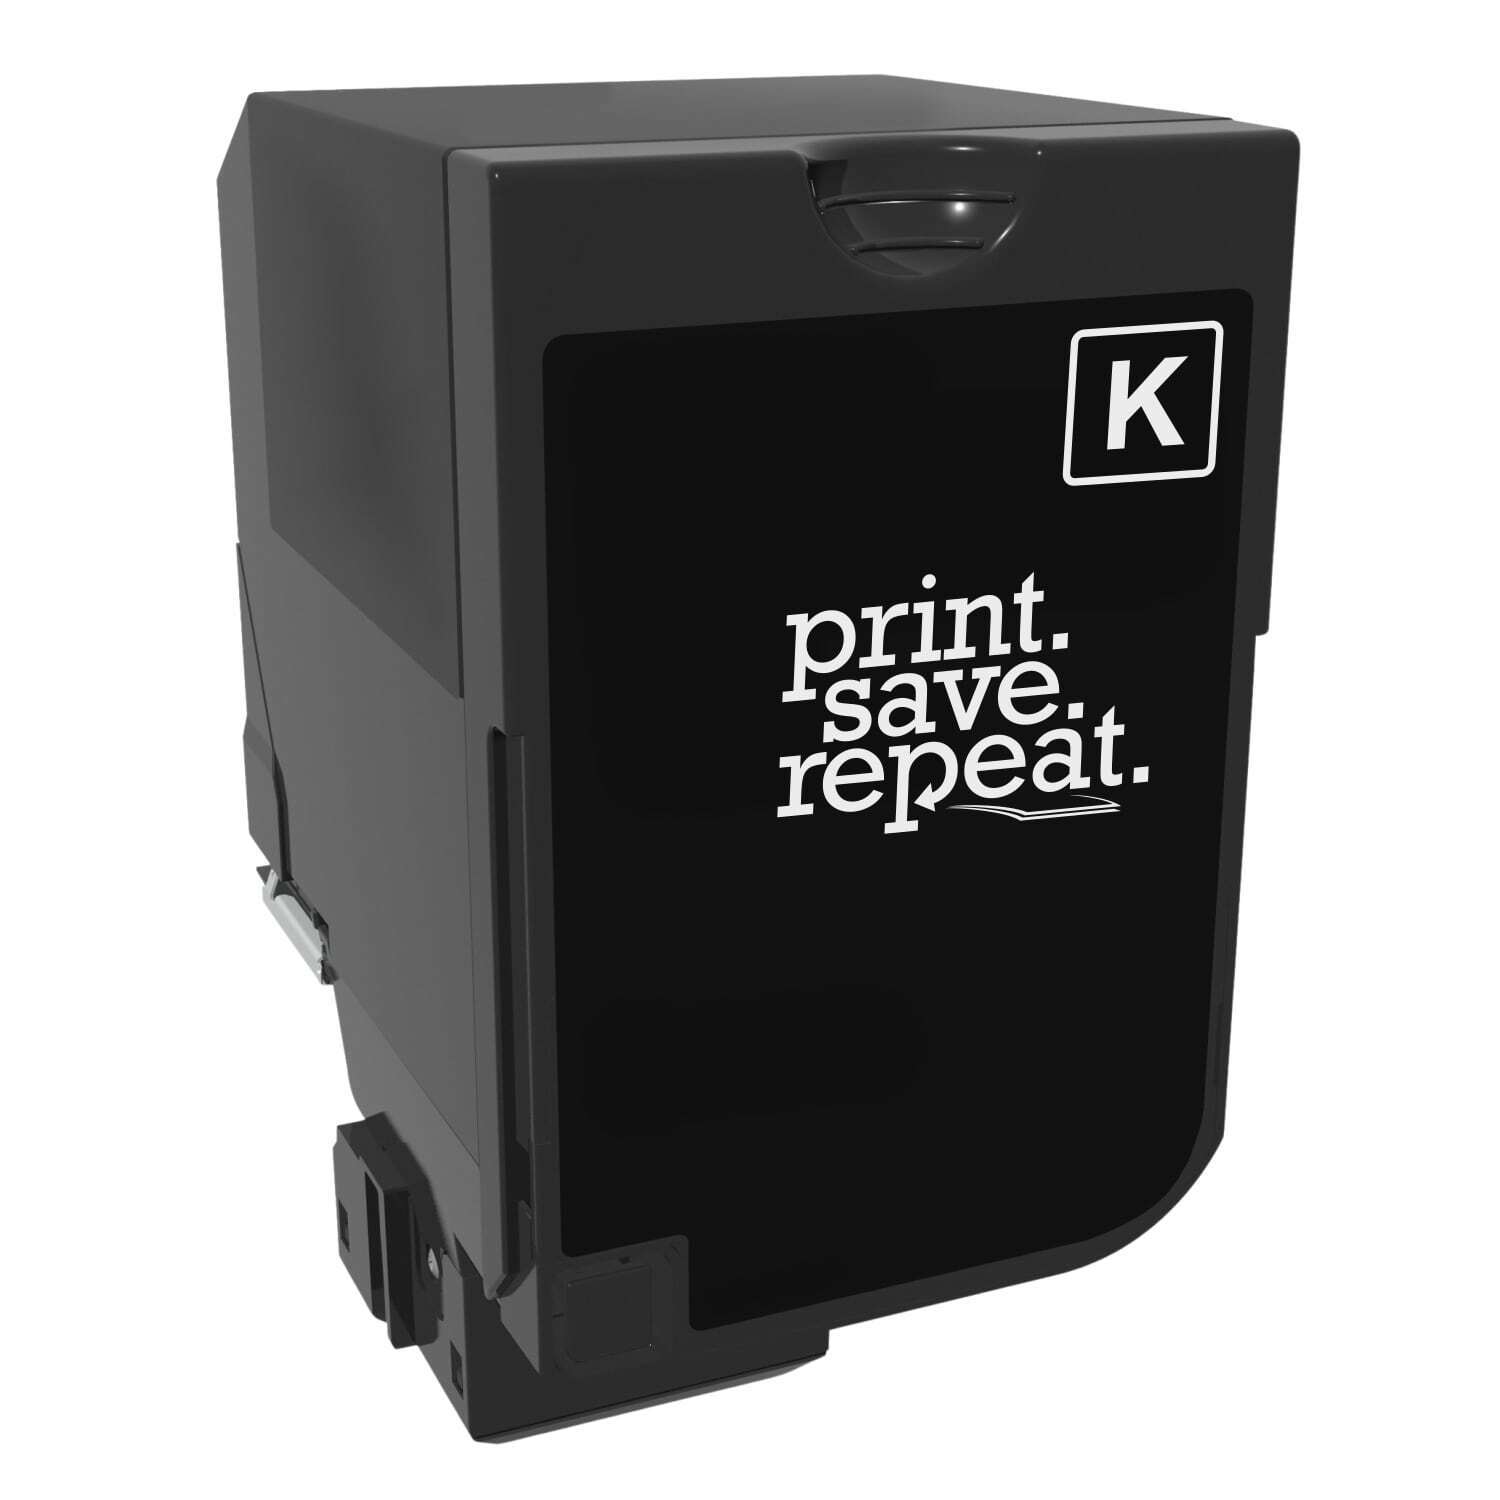 Print.Save.Repeat. Lexmark 74C1SK0 Black Toner Cartridge for CS720, CS725, CX725